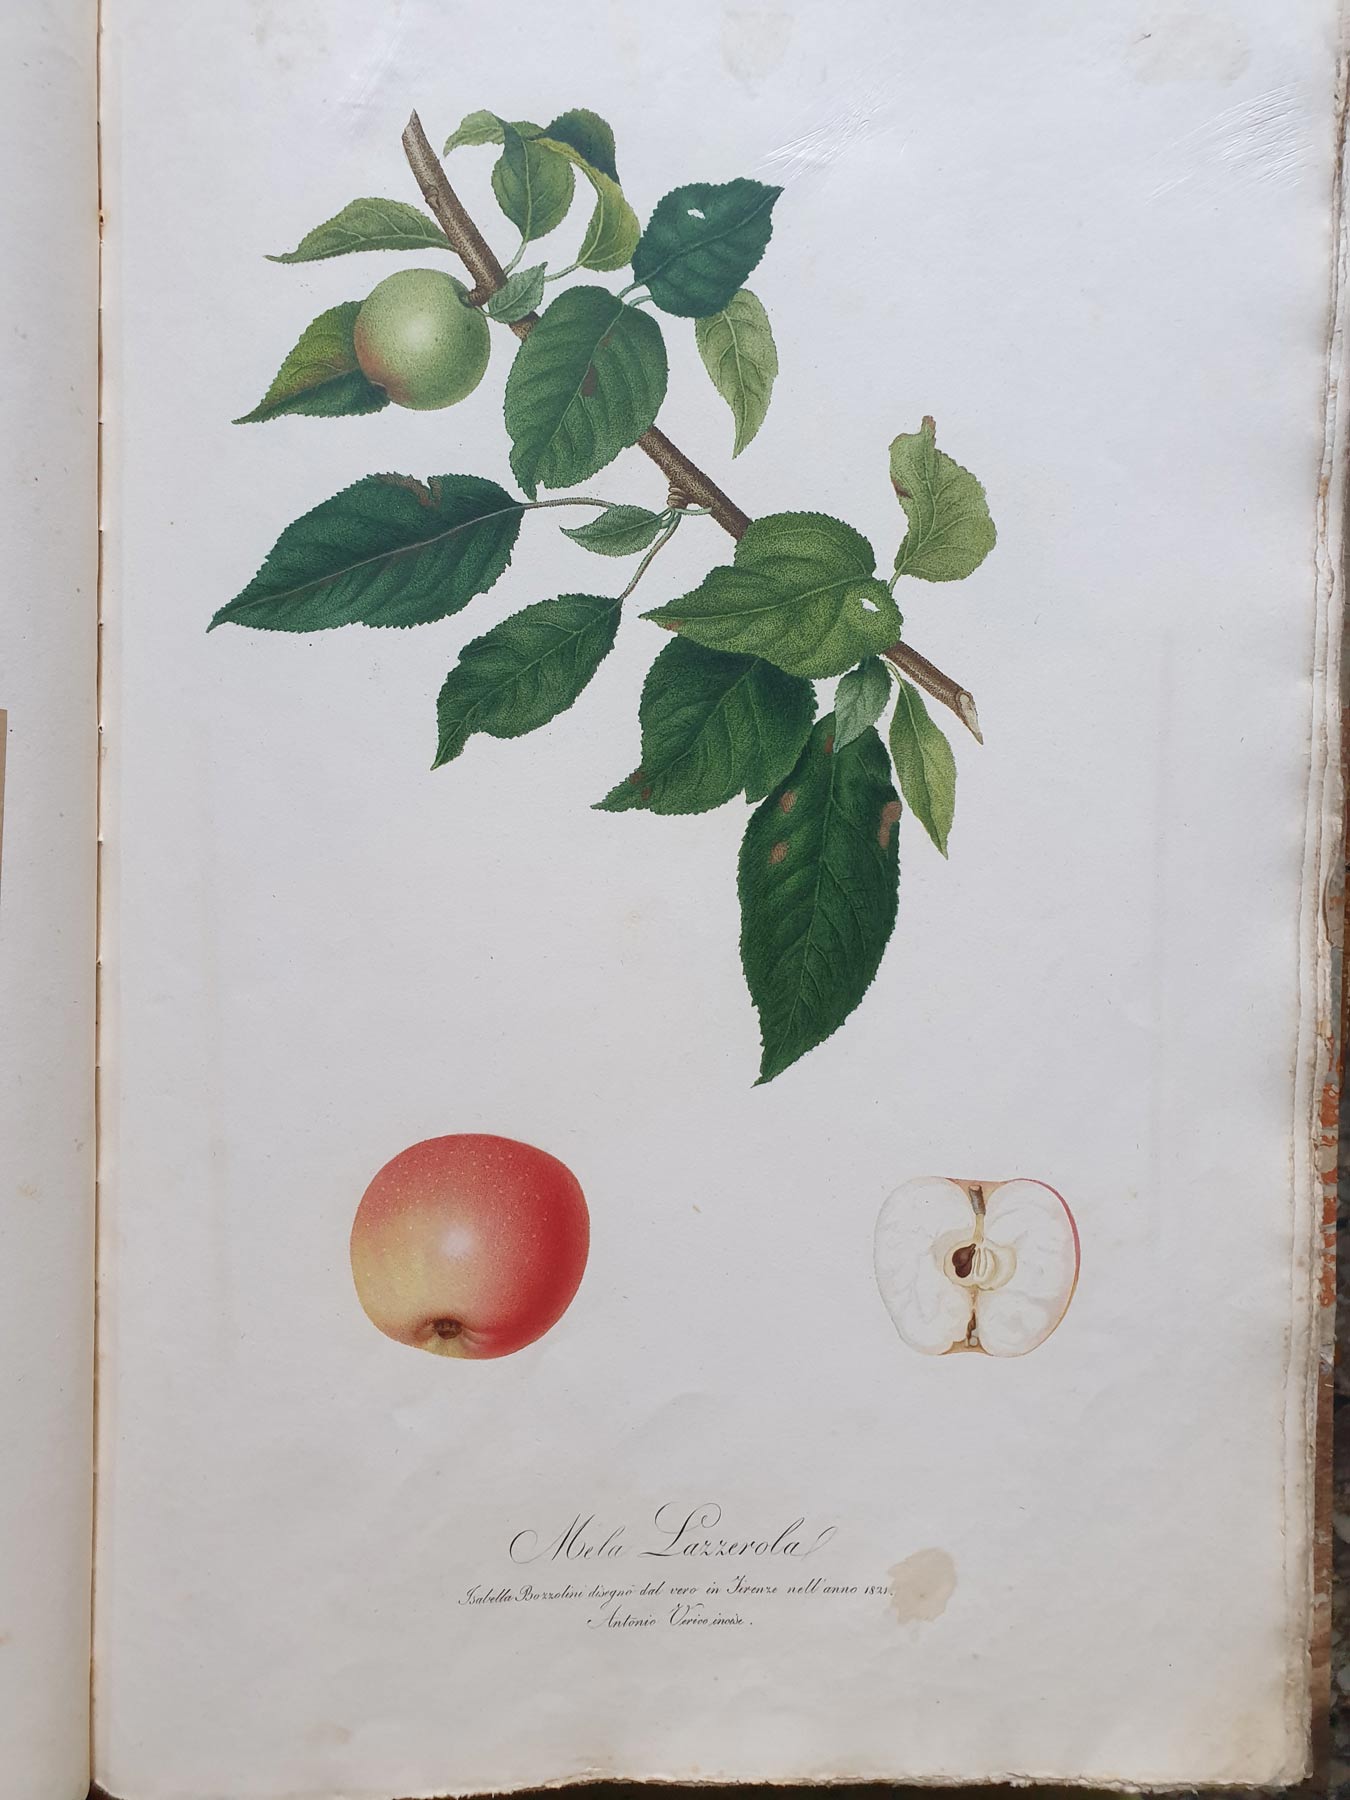 Pomona italiana, illustrazione della mela lazzerola